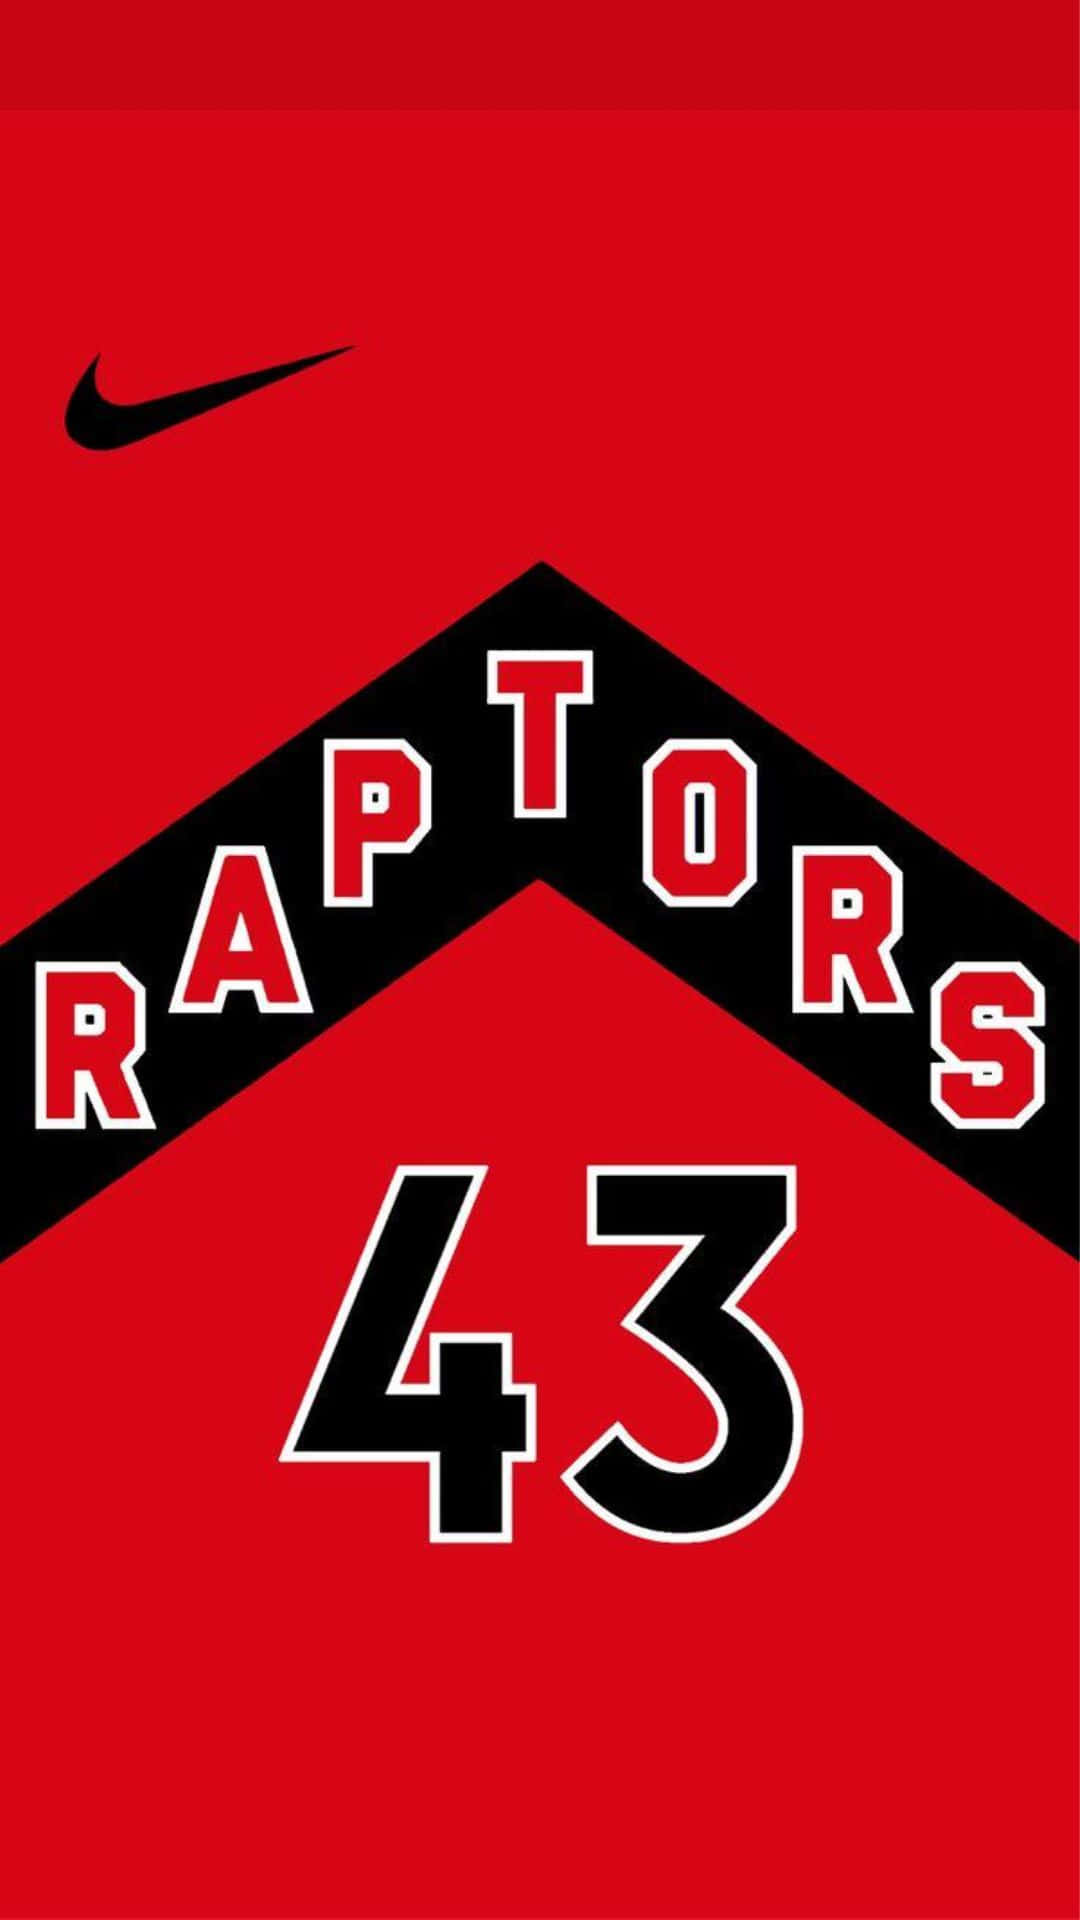 Toronto Raptors43 Jersey Design Wallpaper